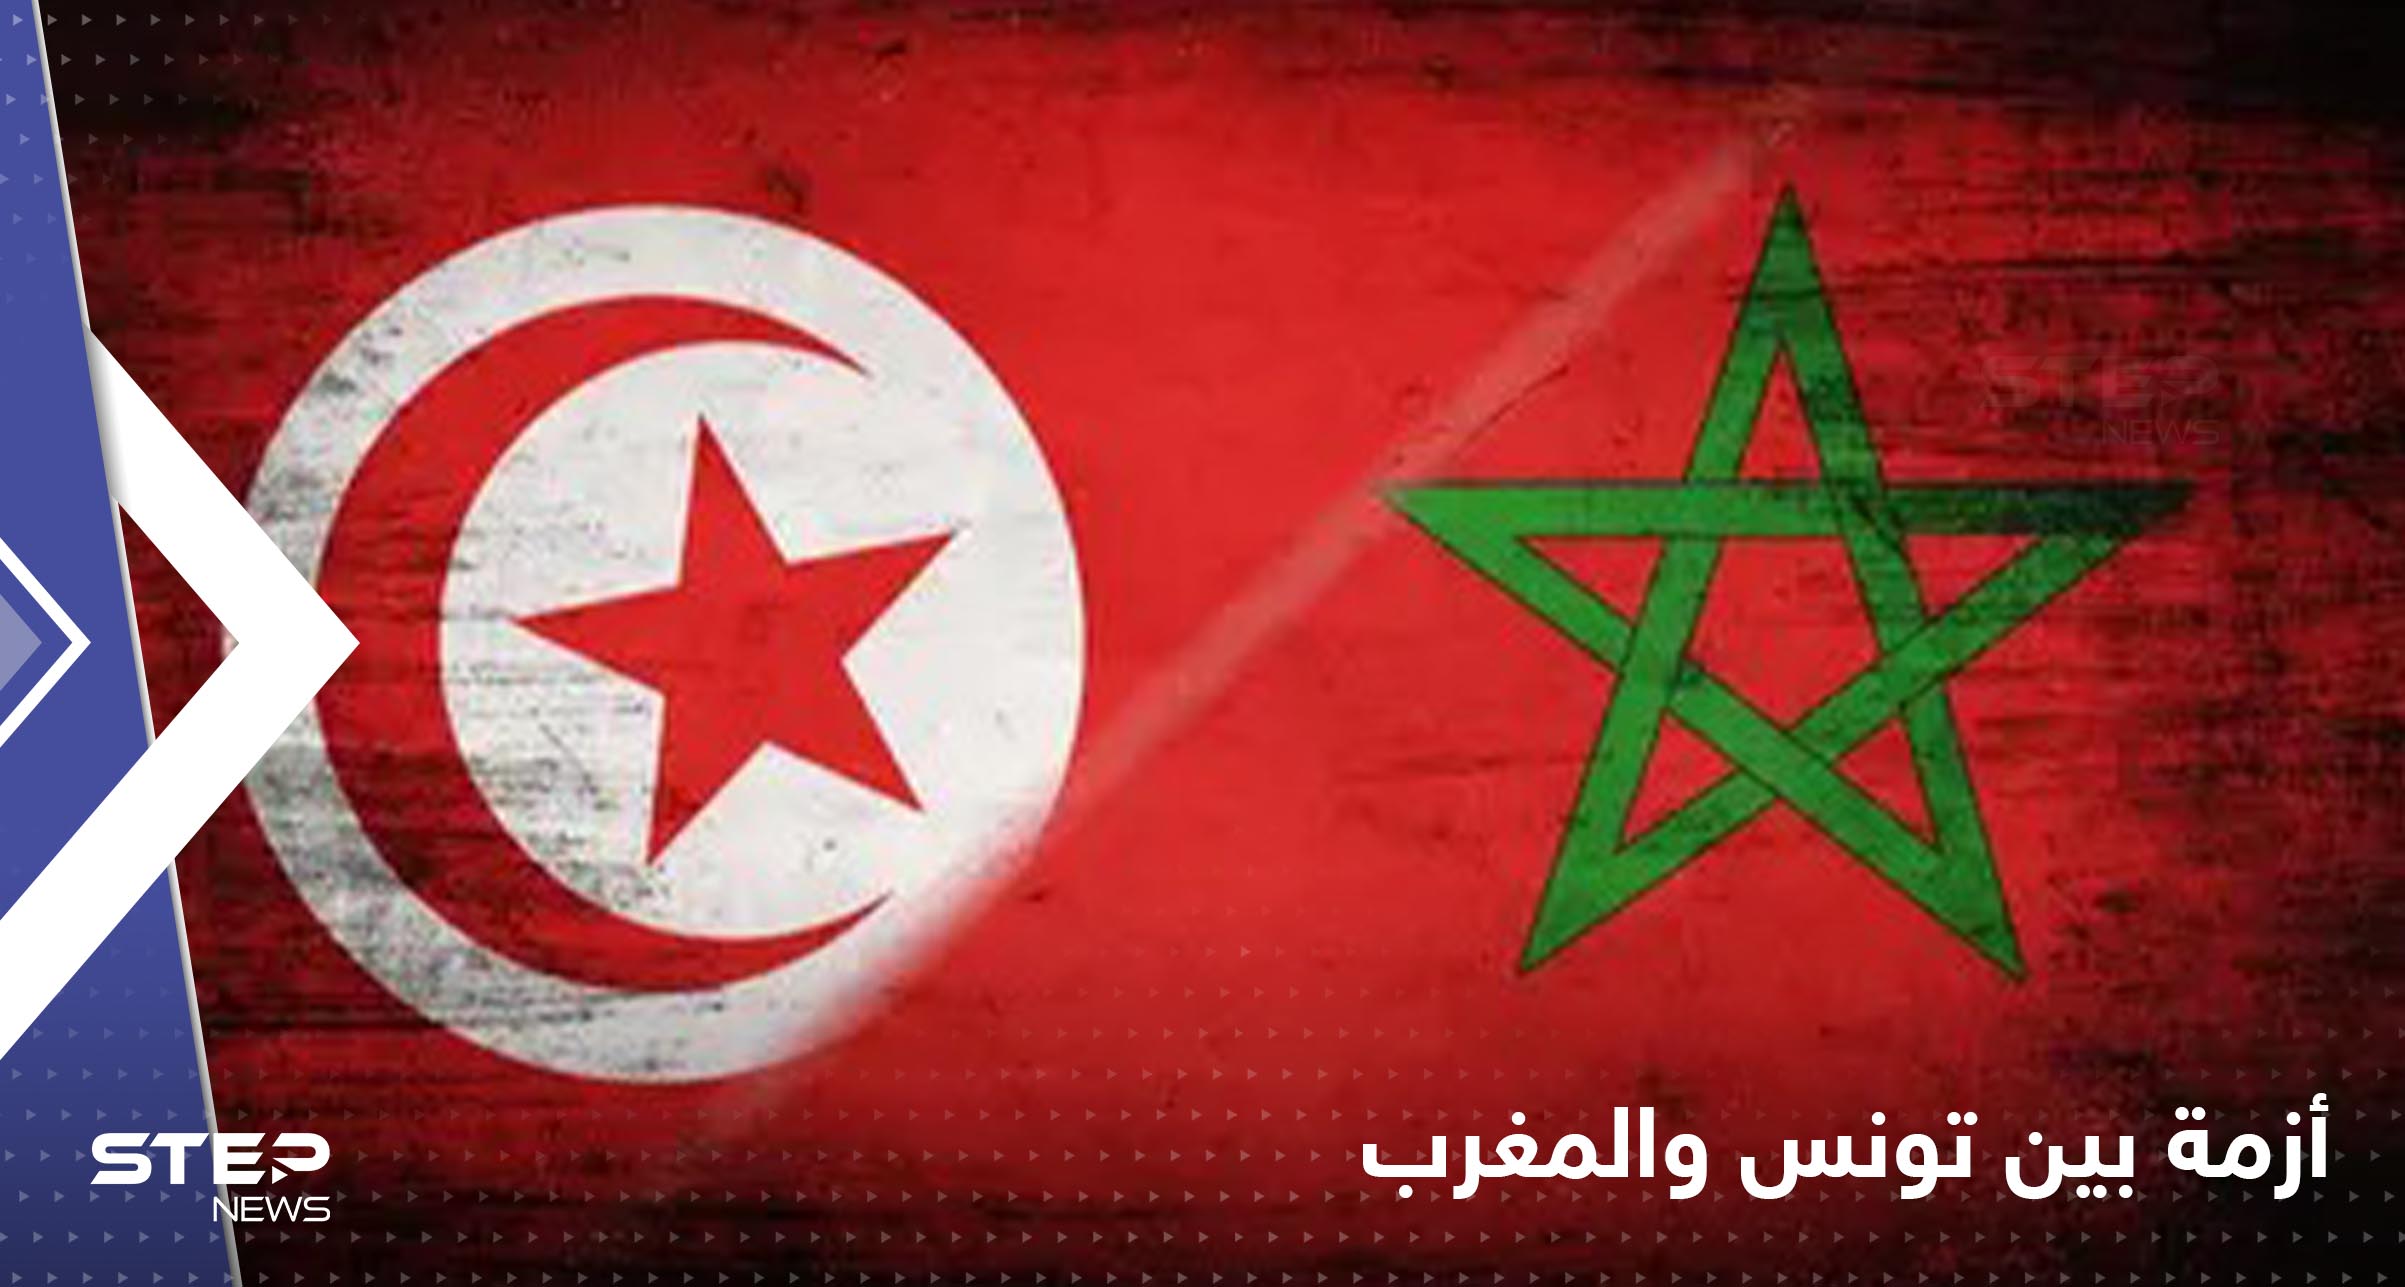 أزمة بين المغرب وتونس يشعلها قيس سعيد